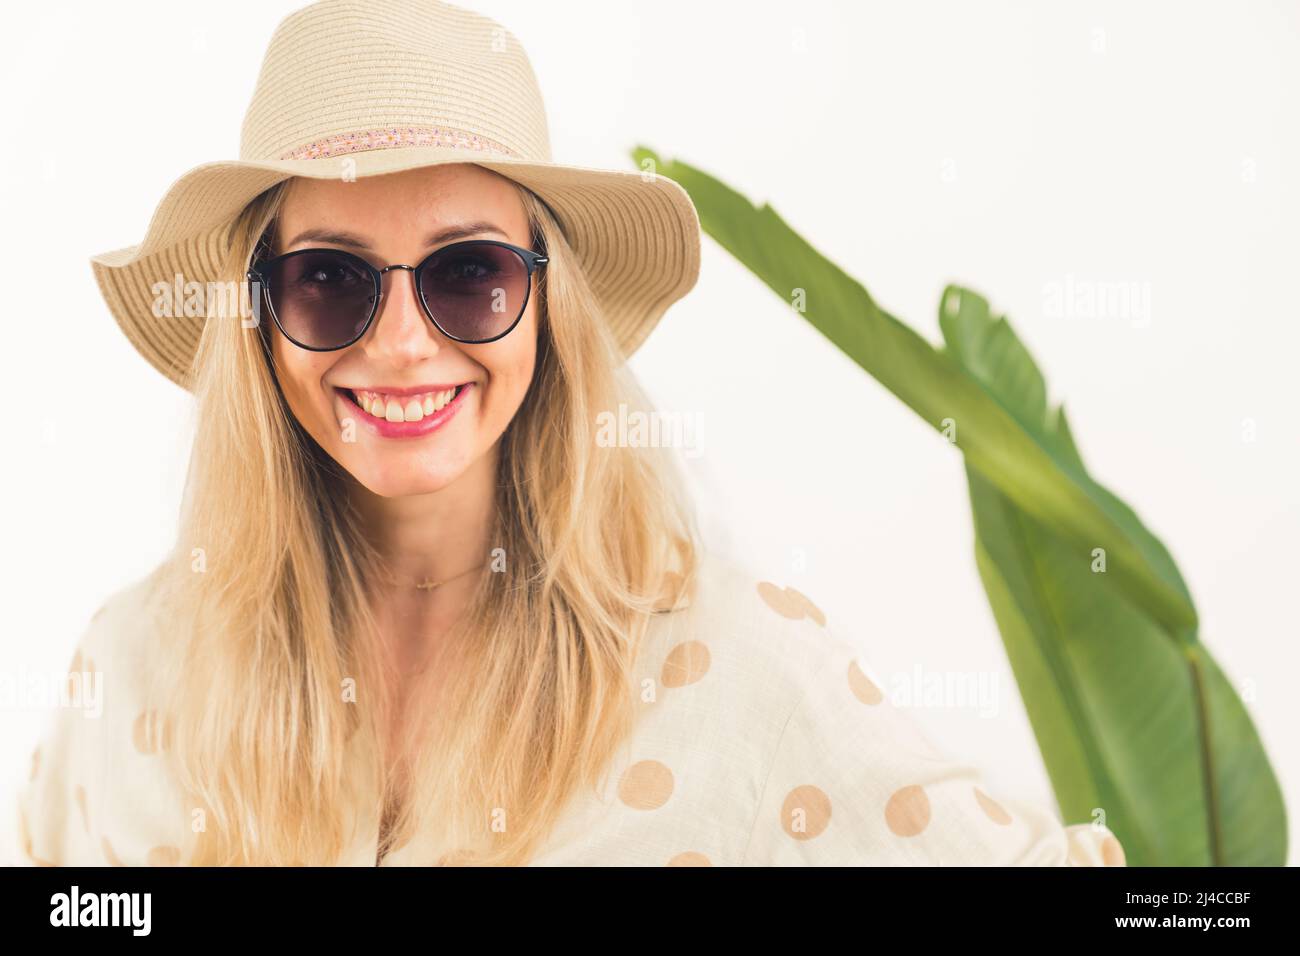 Concetto di viaggio vacanze estive. Donna bionda caucasica sorridente in un cappello e occhiali da sole grandi sorride alla macchina fotografica mentre si alza di fronte a una foglia verde sfocata su sfondo bianco. Foto di alta qualità Foto Stock